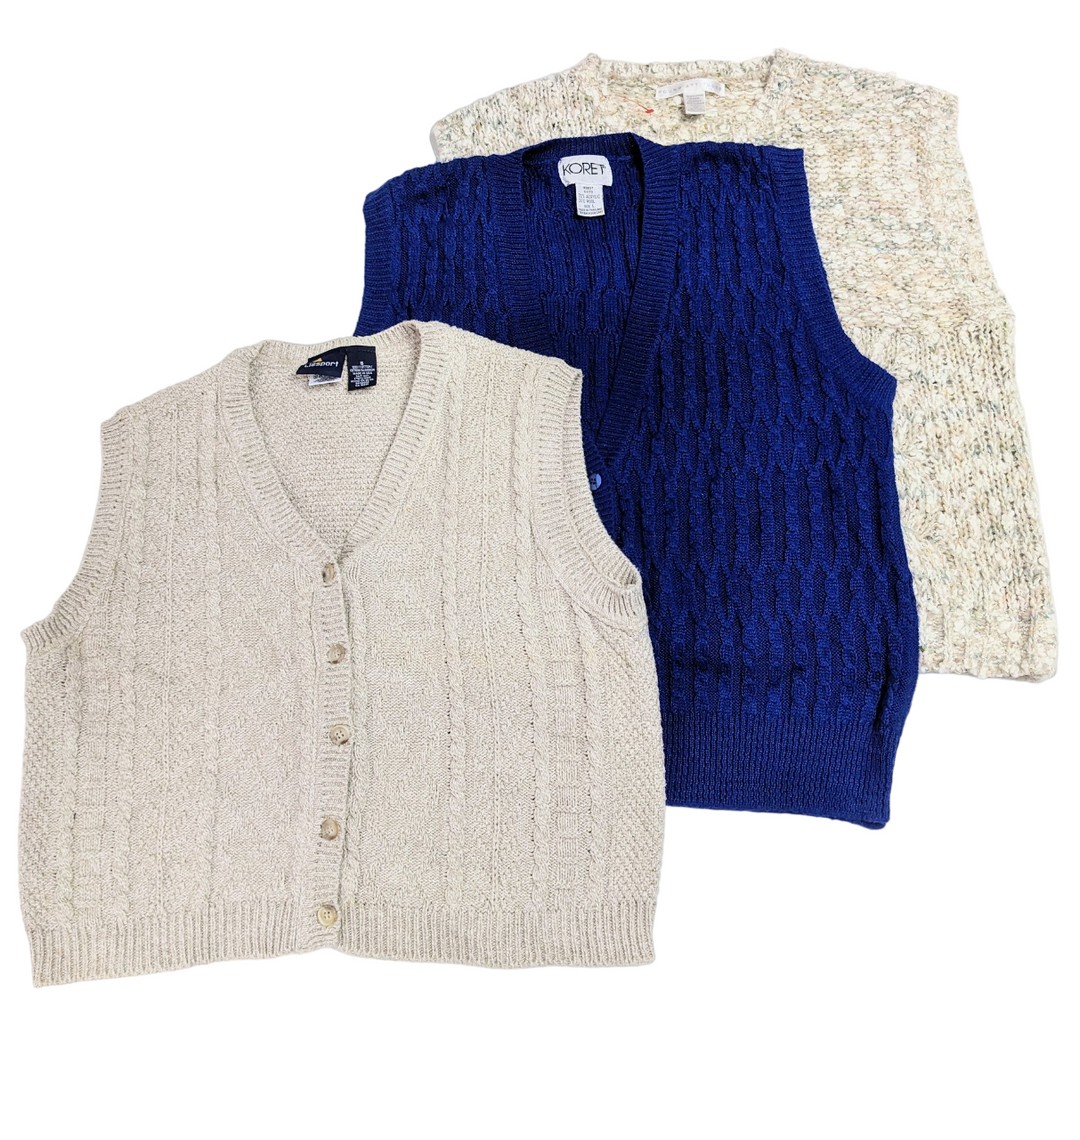 Vintage Sweater Vests 20 pcs 14 lbs  E0205113-16 - Raghouse